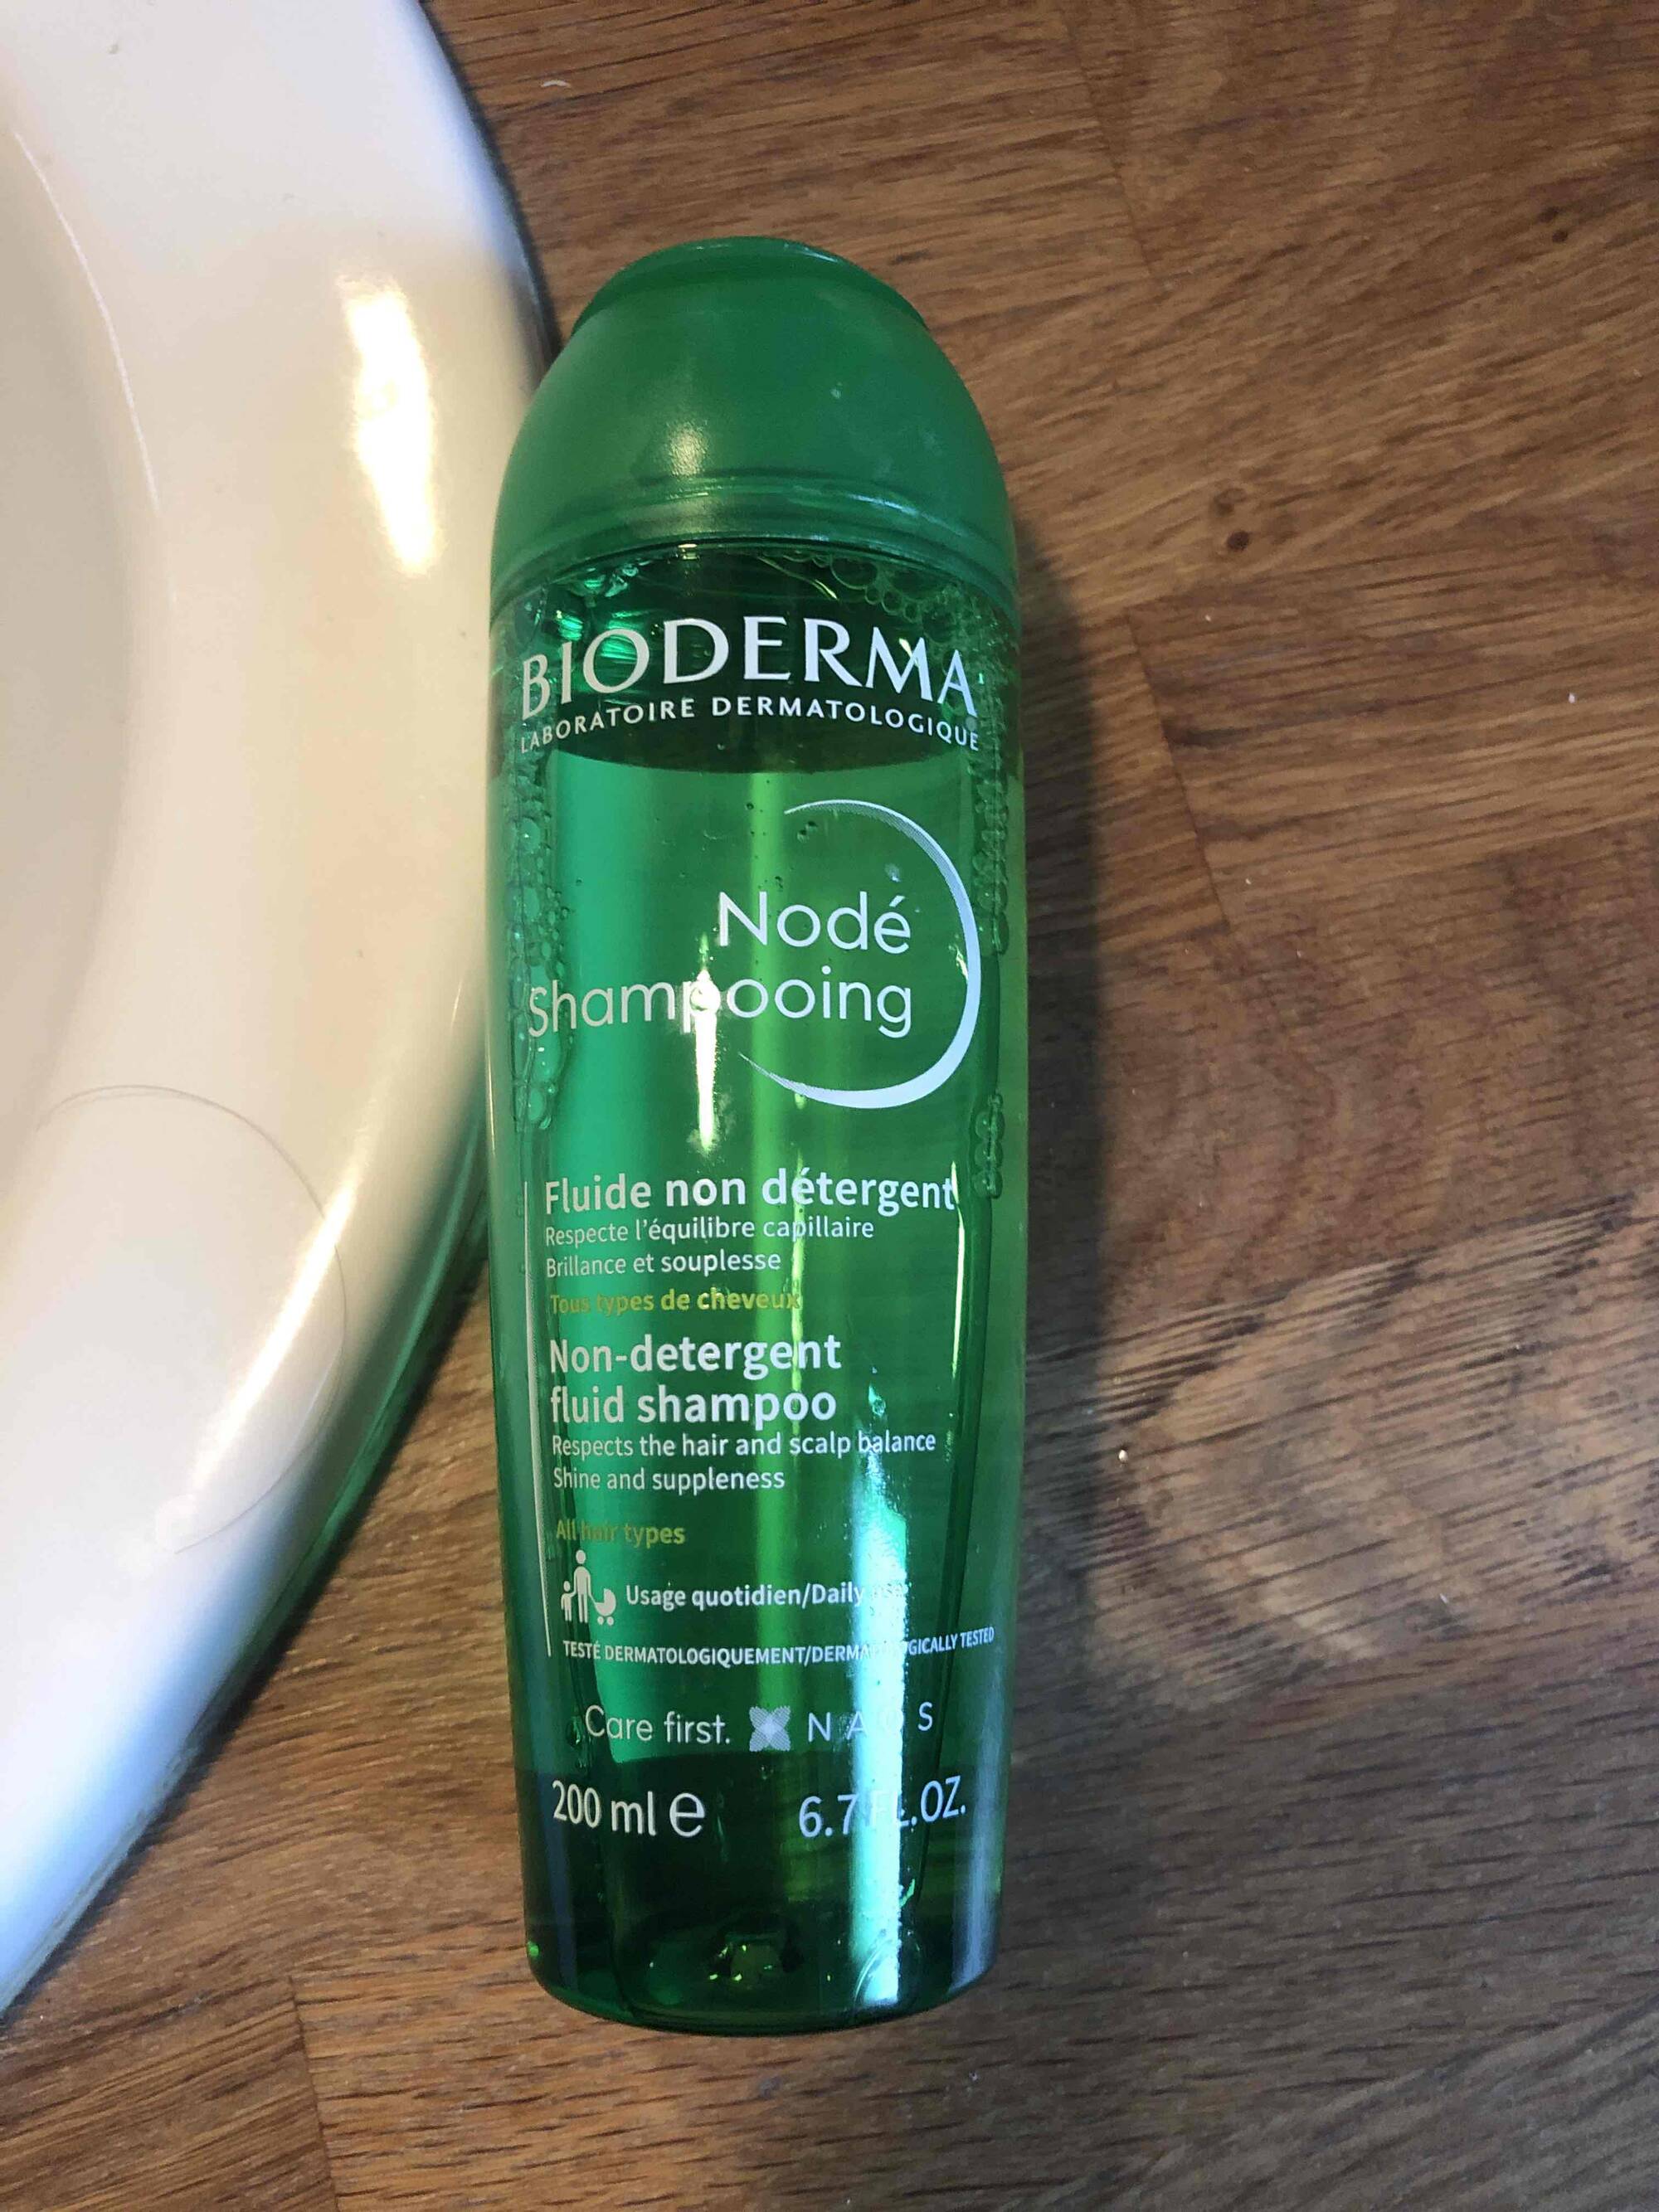 BIODERMA - Nodé shampooing fluide non détergent